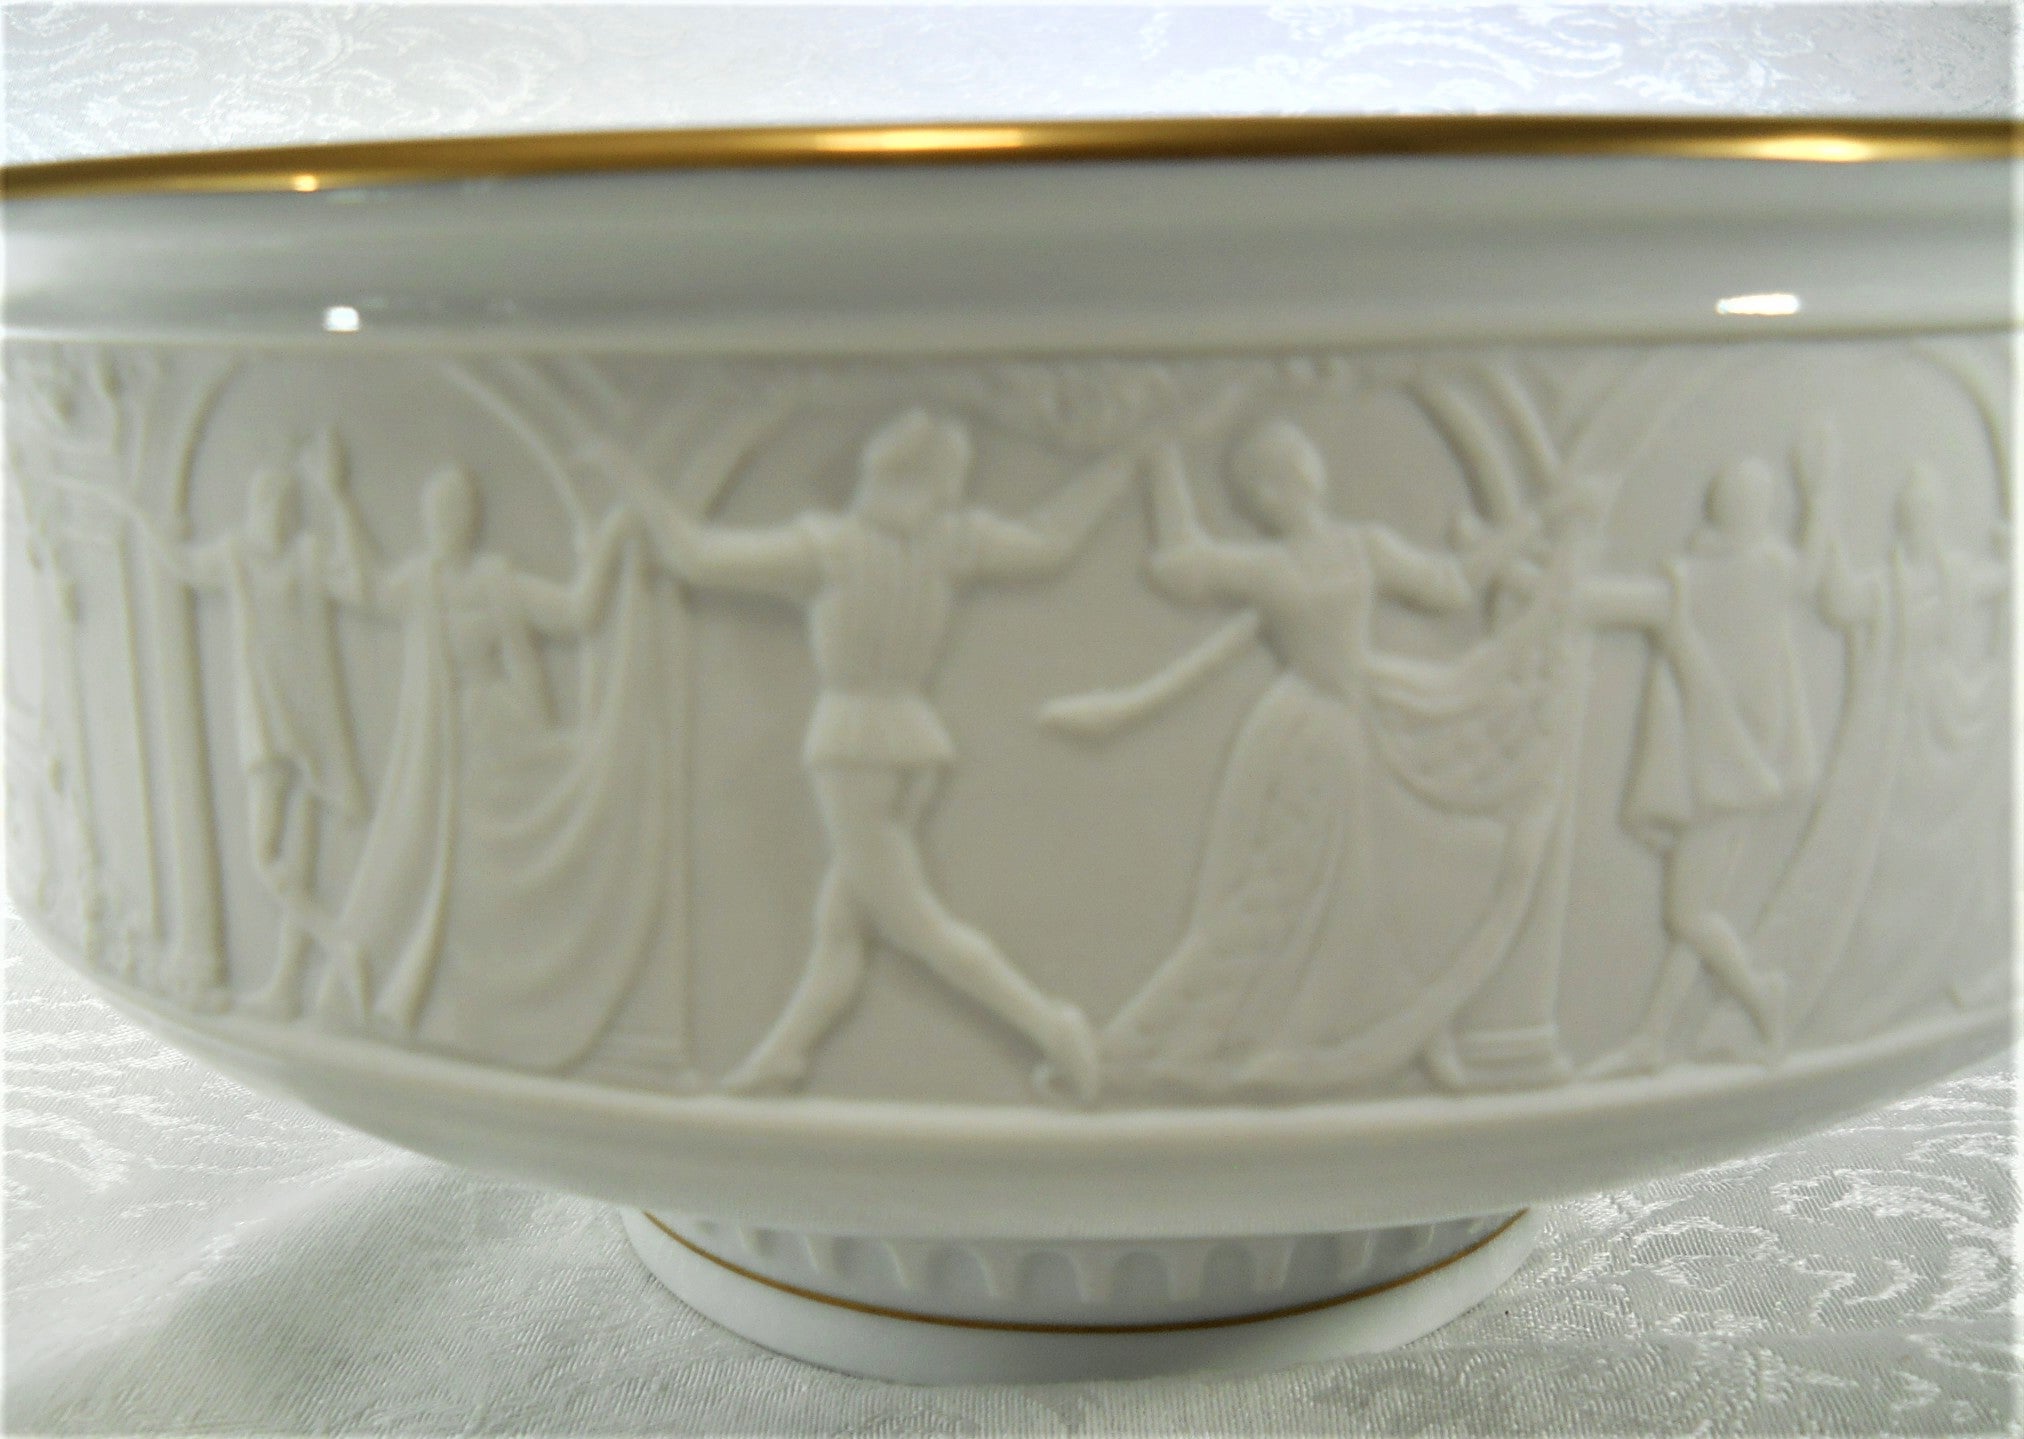 Porcelaine royale - Série de 10 fèves or, brillantes et mates - 2005